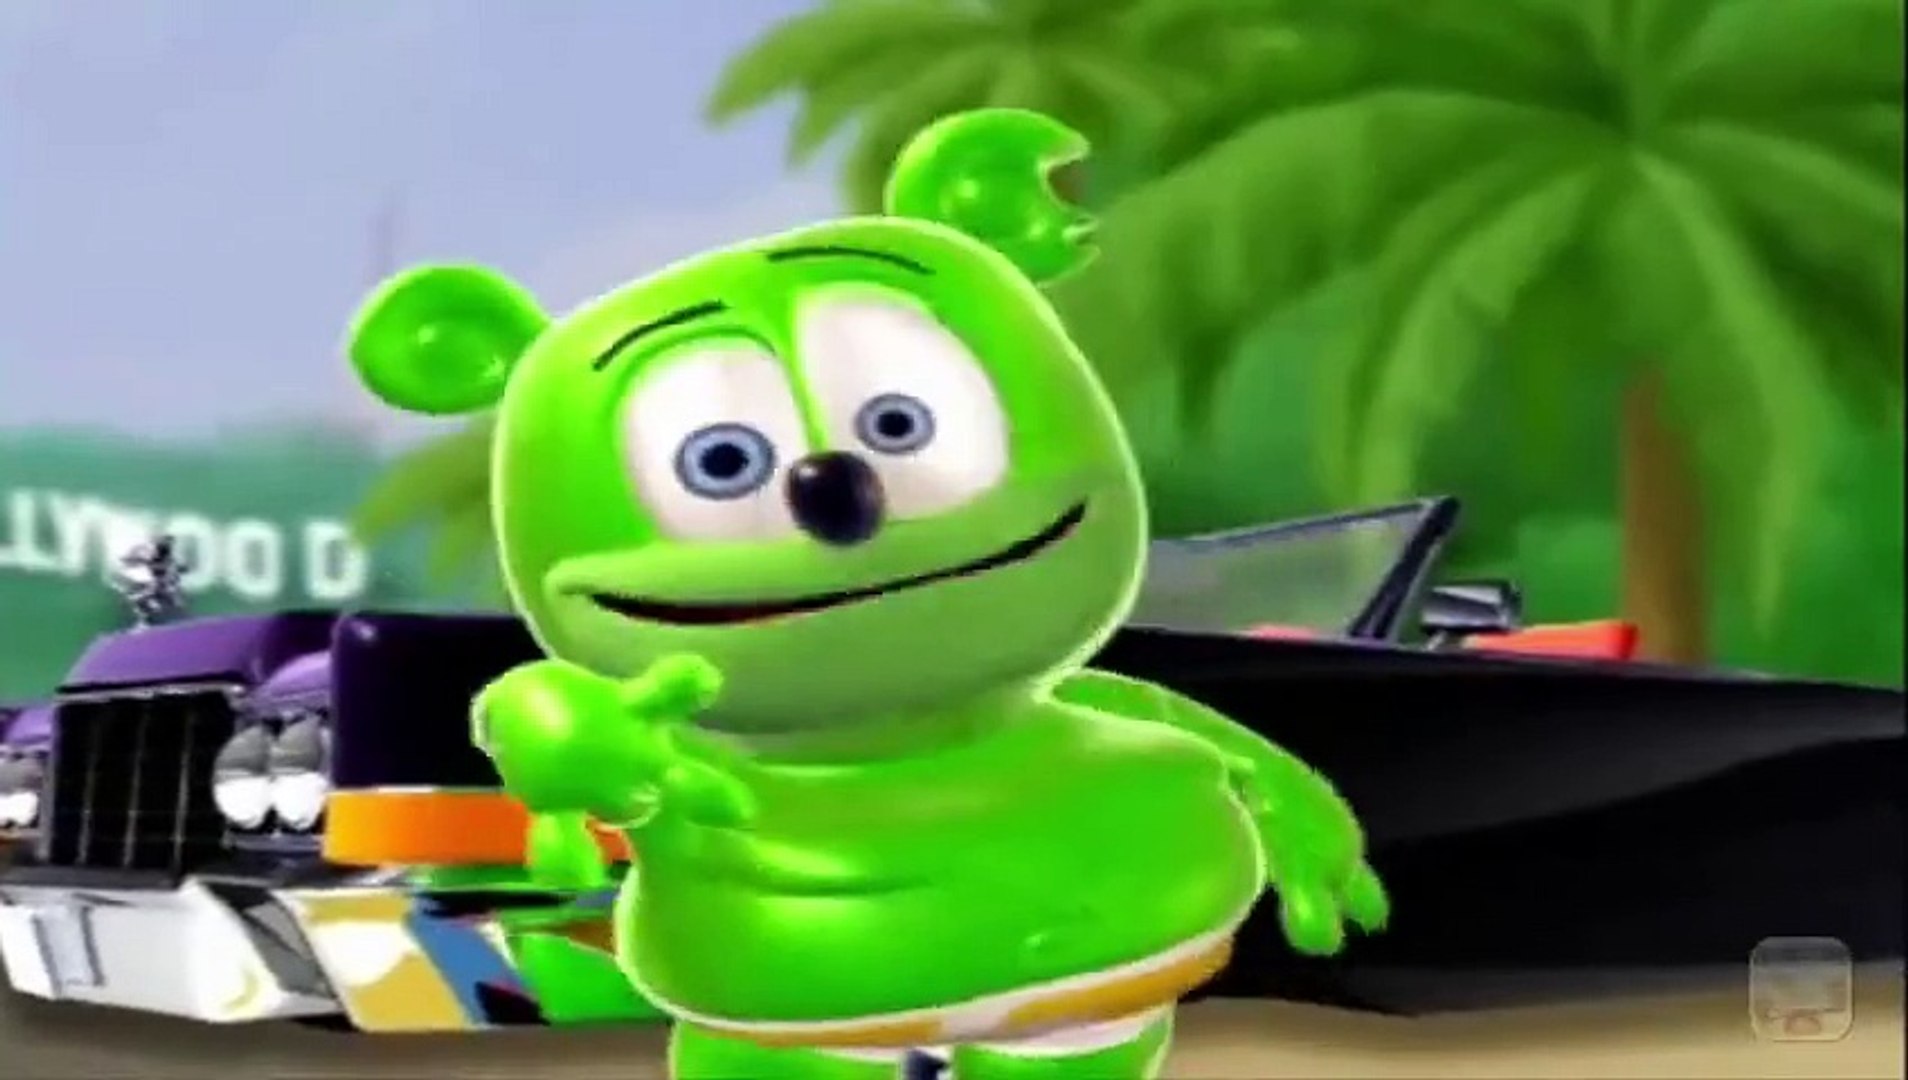 Eu Sou O Gummy Bear Em português - video Dailymotion